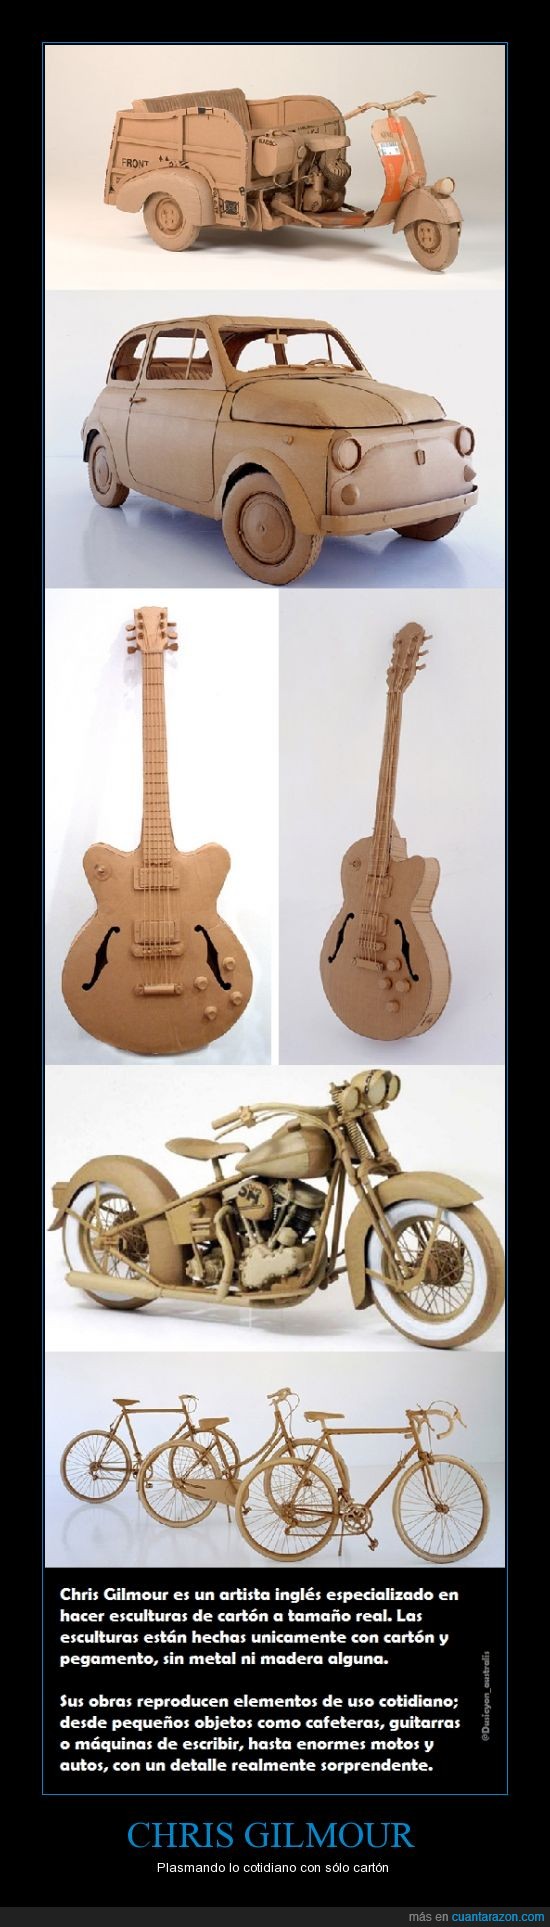 cartón,Cris Gilmour,plasmar,guitarra,coche,moto